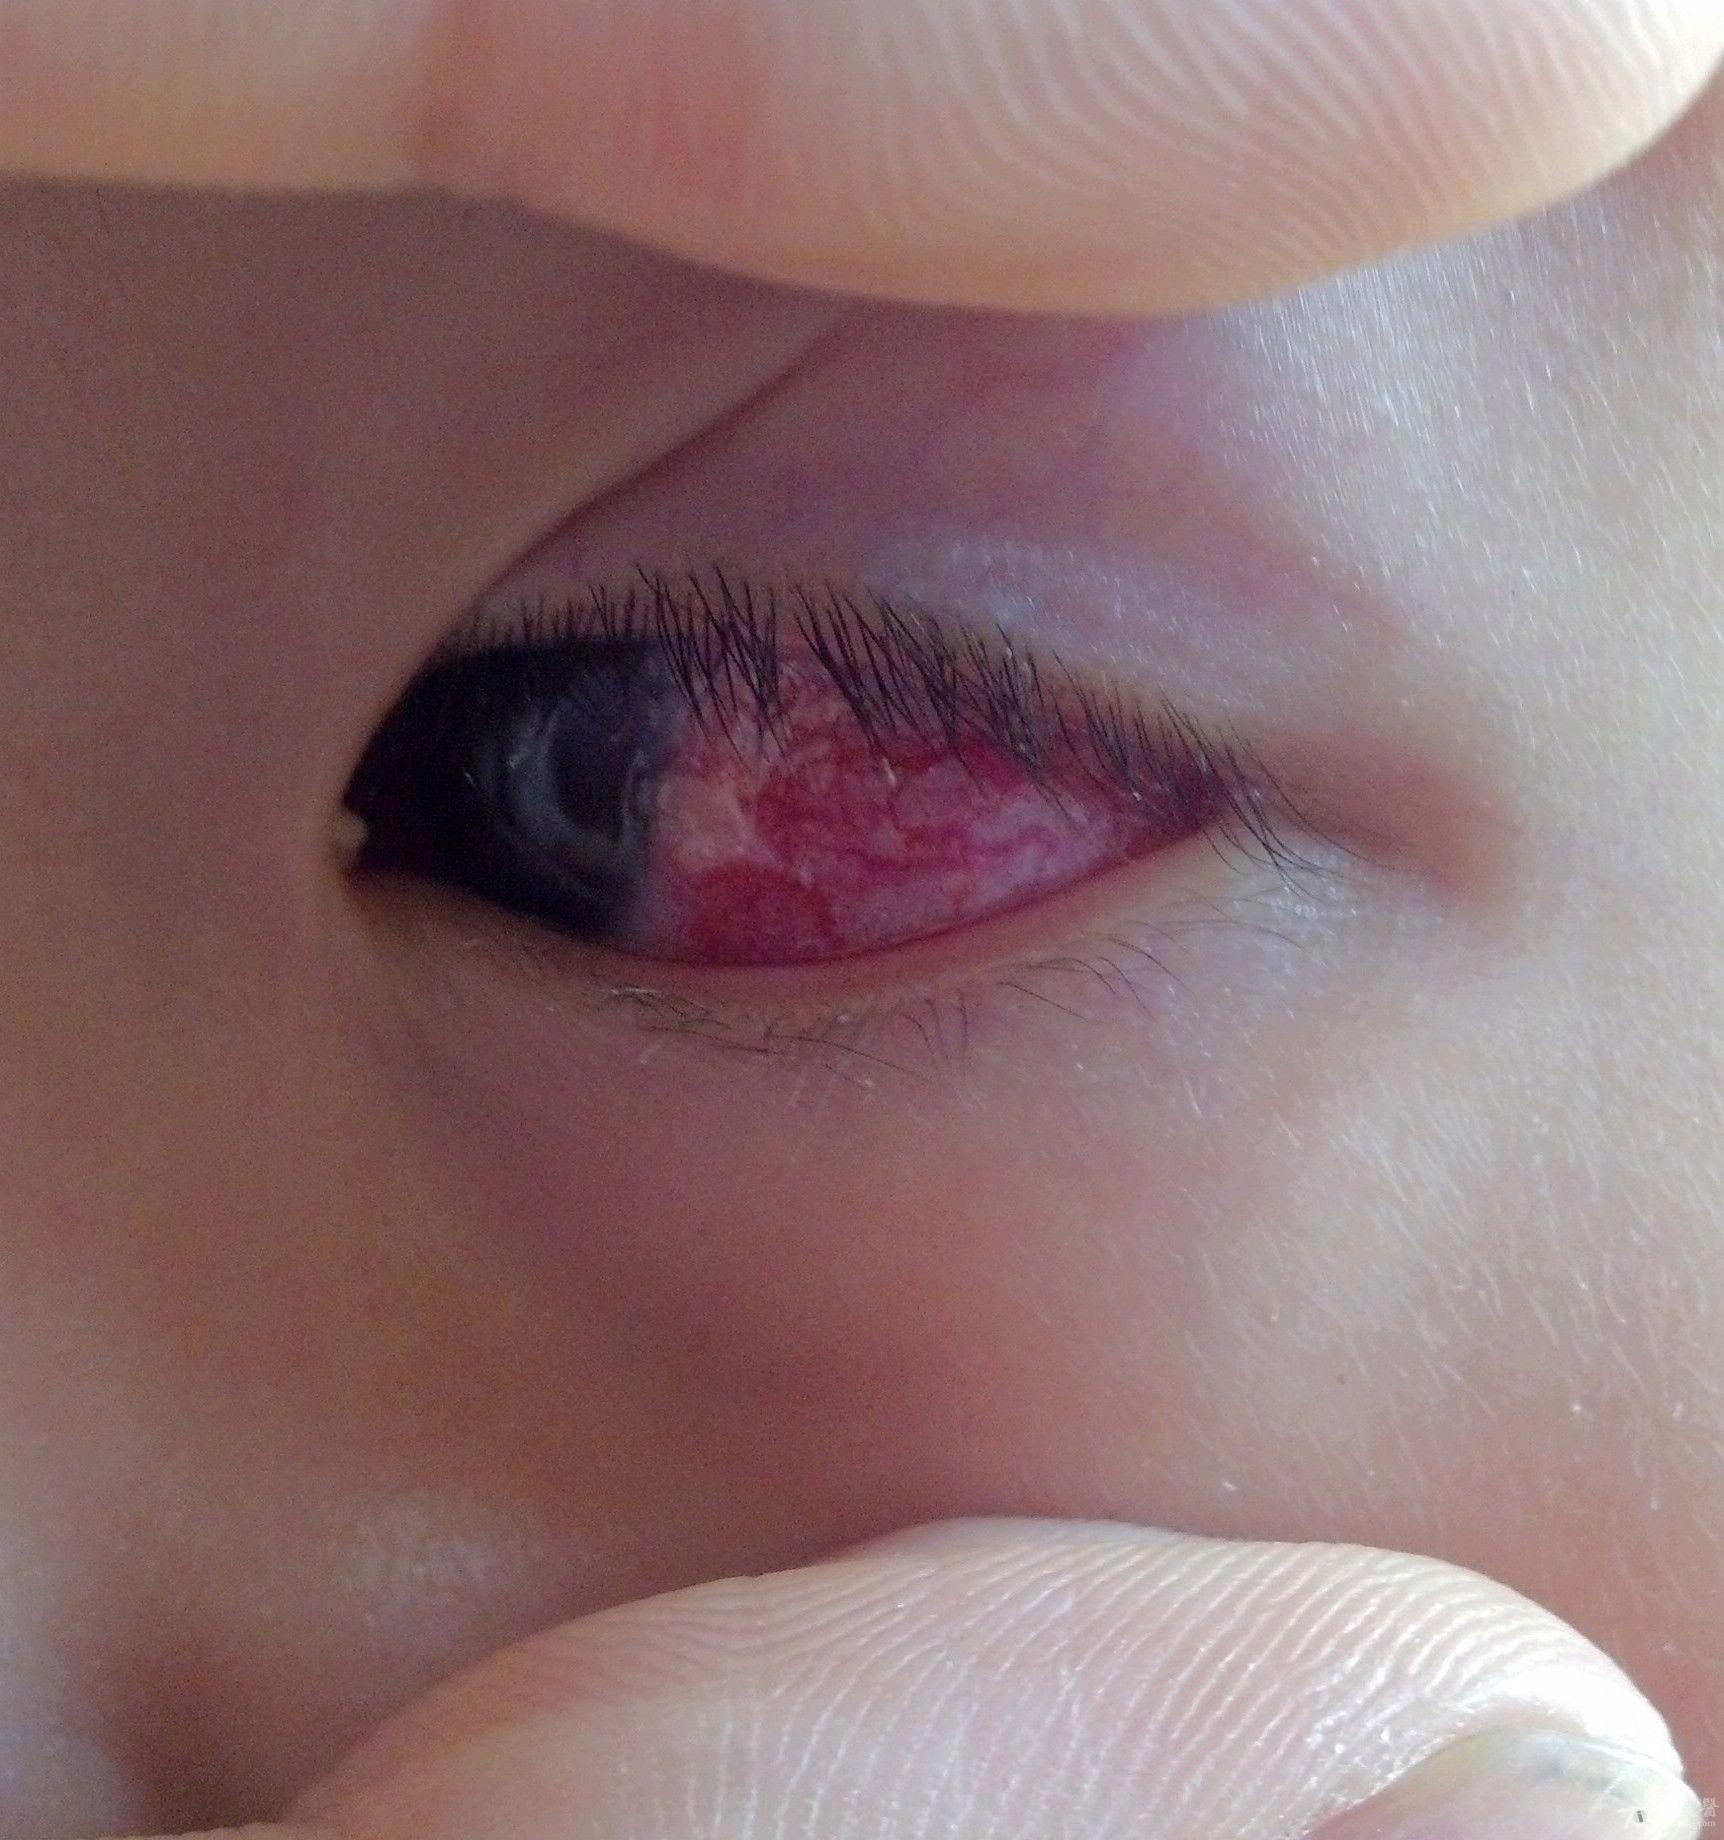 儿童角膜炎的症状图片图片